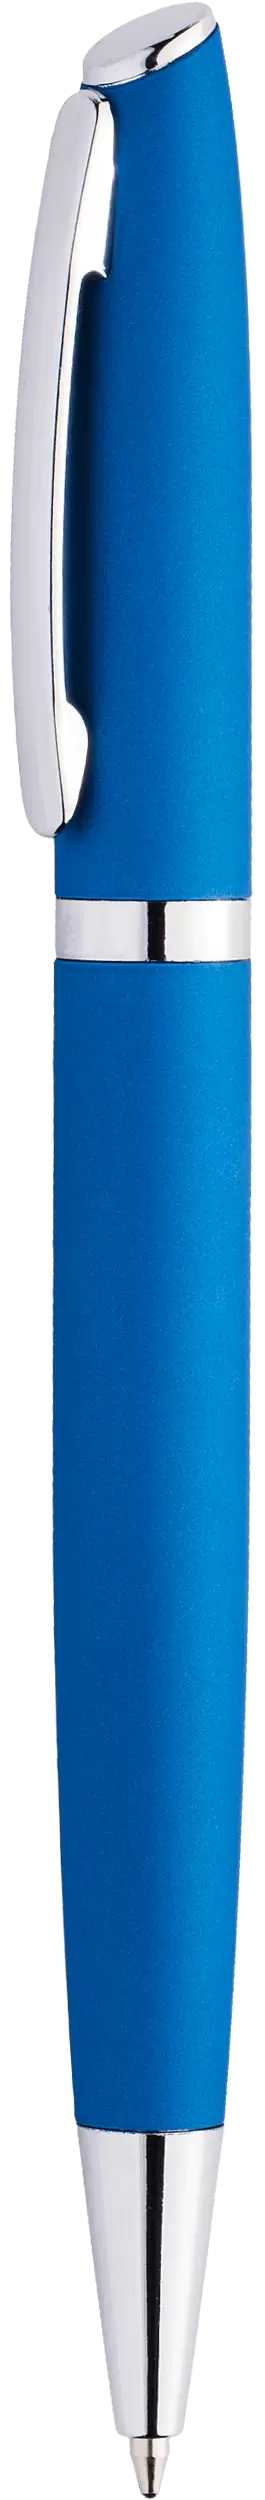 Ручка VESTA SOFT Синяя 1121.01